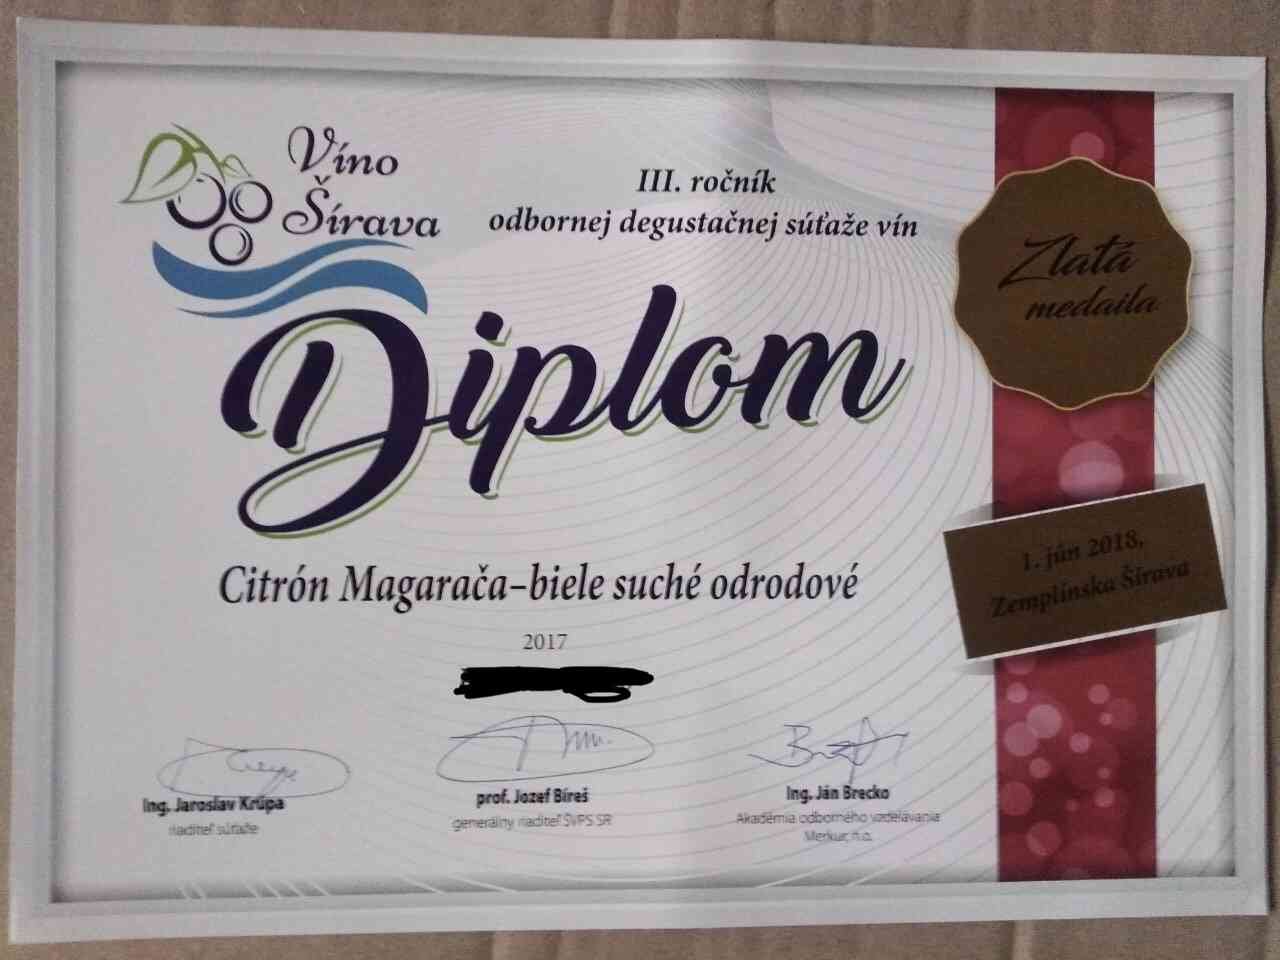 Белое полусладкое вино Цитрон заняло первое место на третьем ежегодном конкурсе дегустации марочных вин в Словакии в 2018 году.